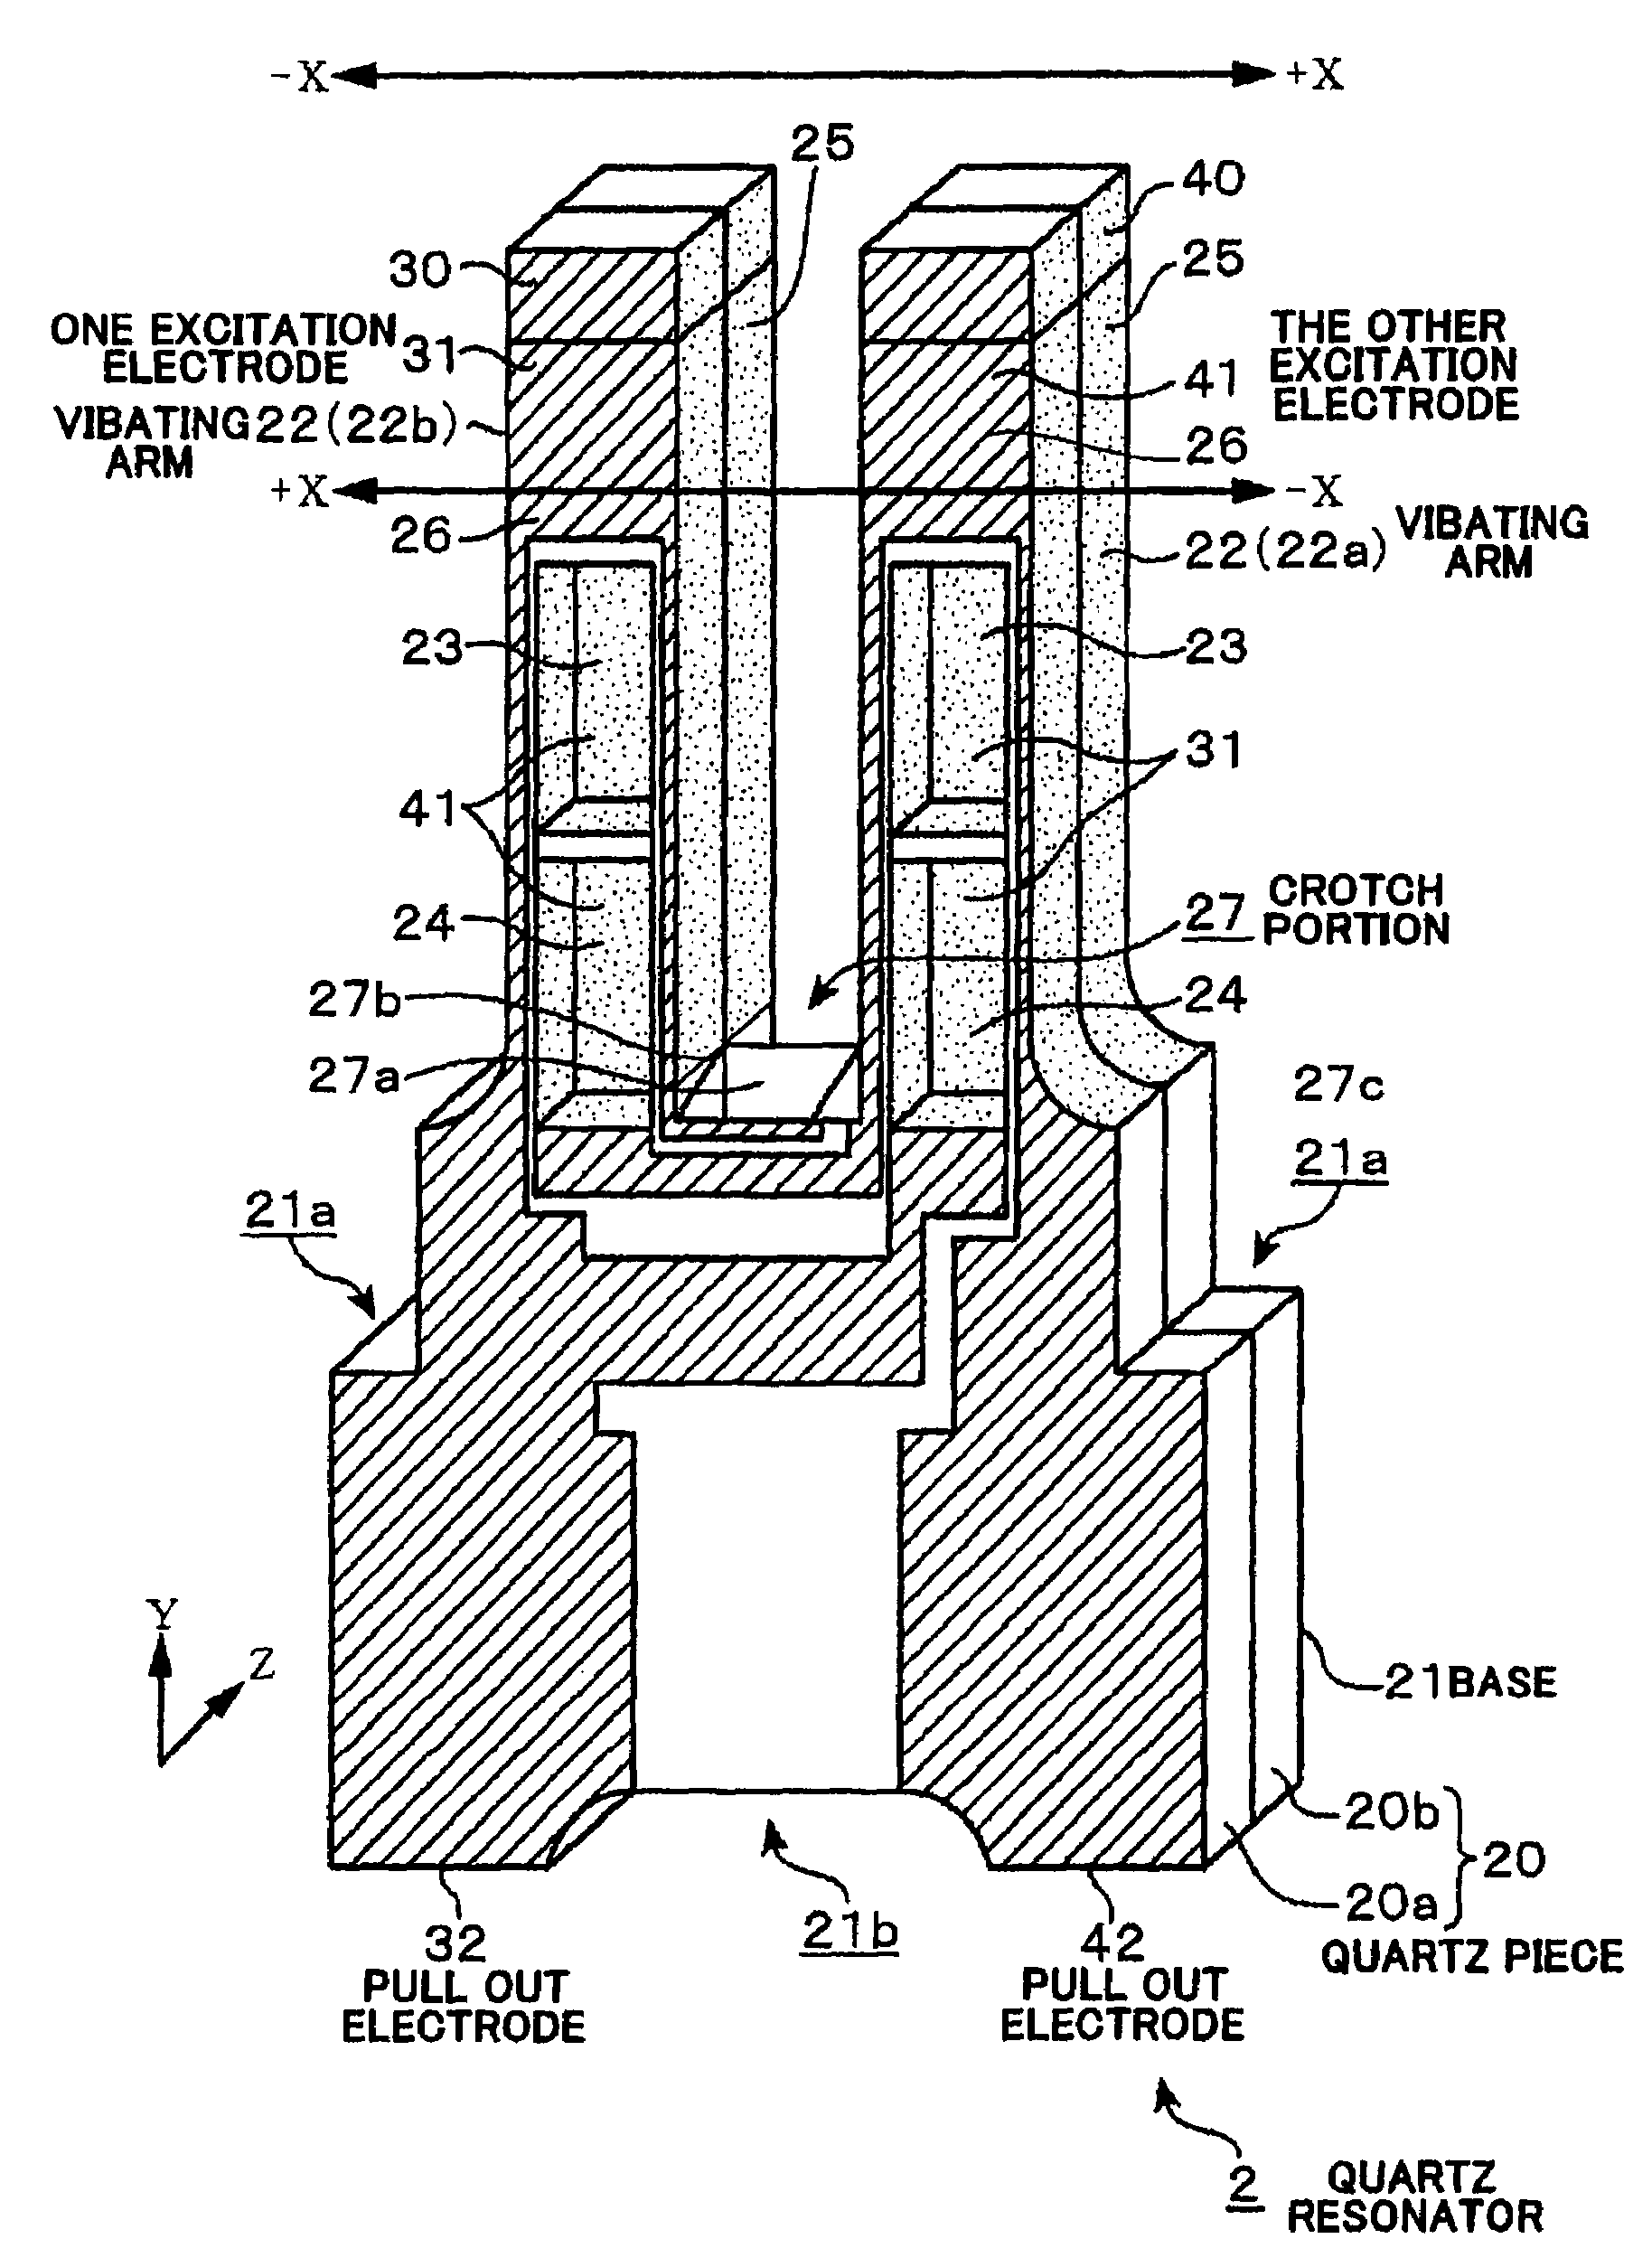 Method of manufacturing a quartz resonator